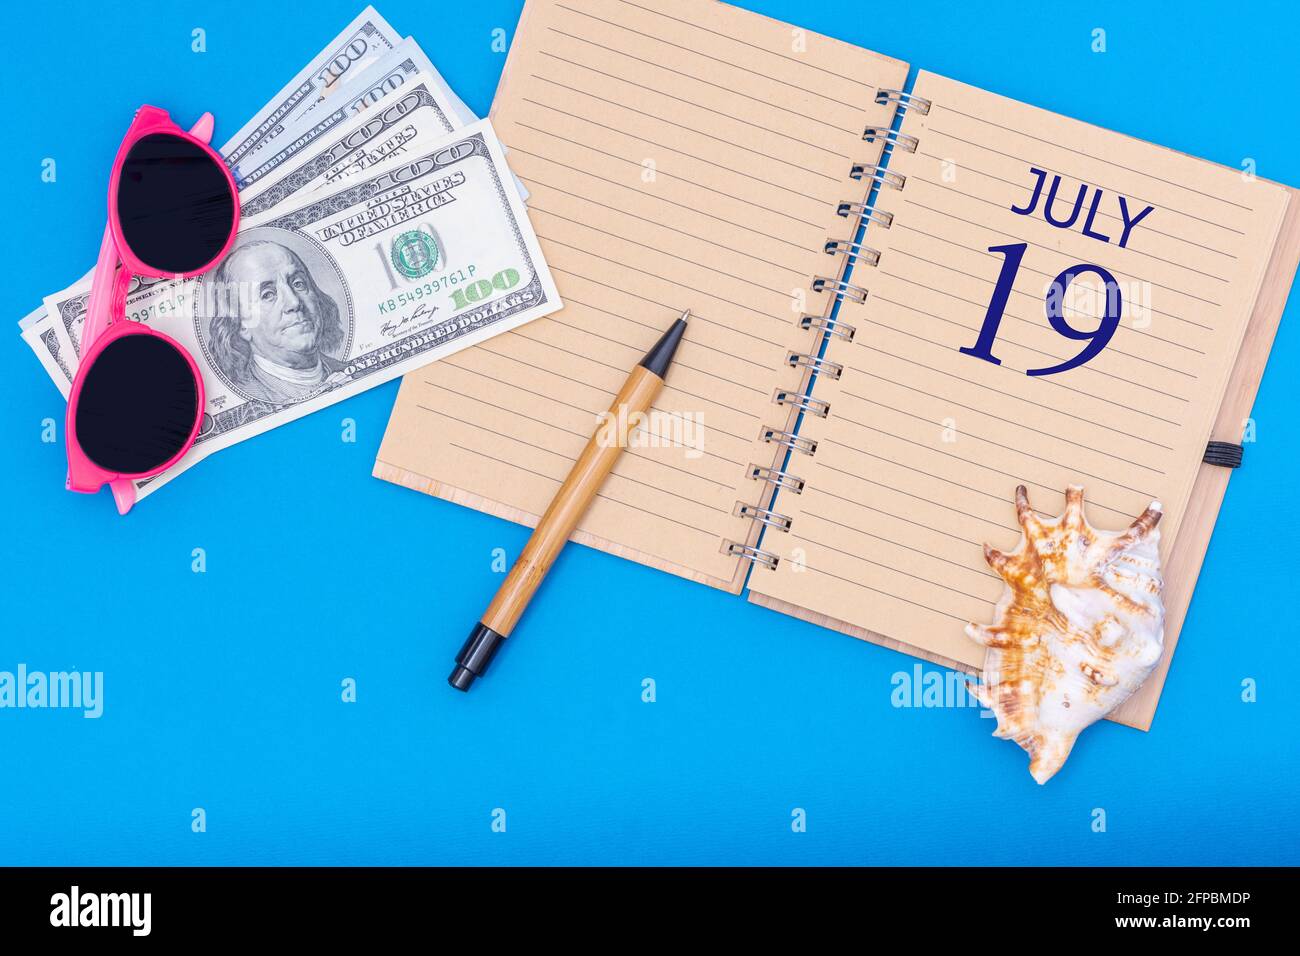 19 luglio. Concetto di viaggio piatto - blocco note con la data del 19 luglio penna, occhiali, dollari e conchiglia su sfondo blu. Estate mese, giorno Foto Stock